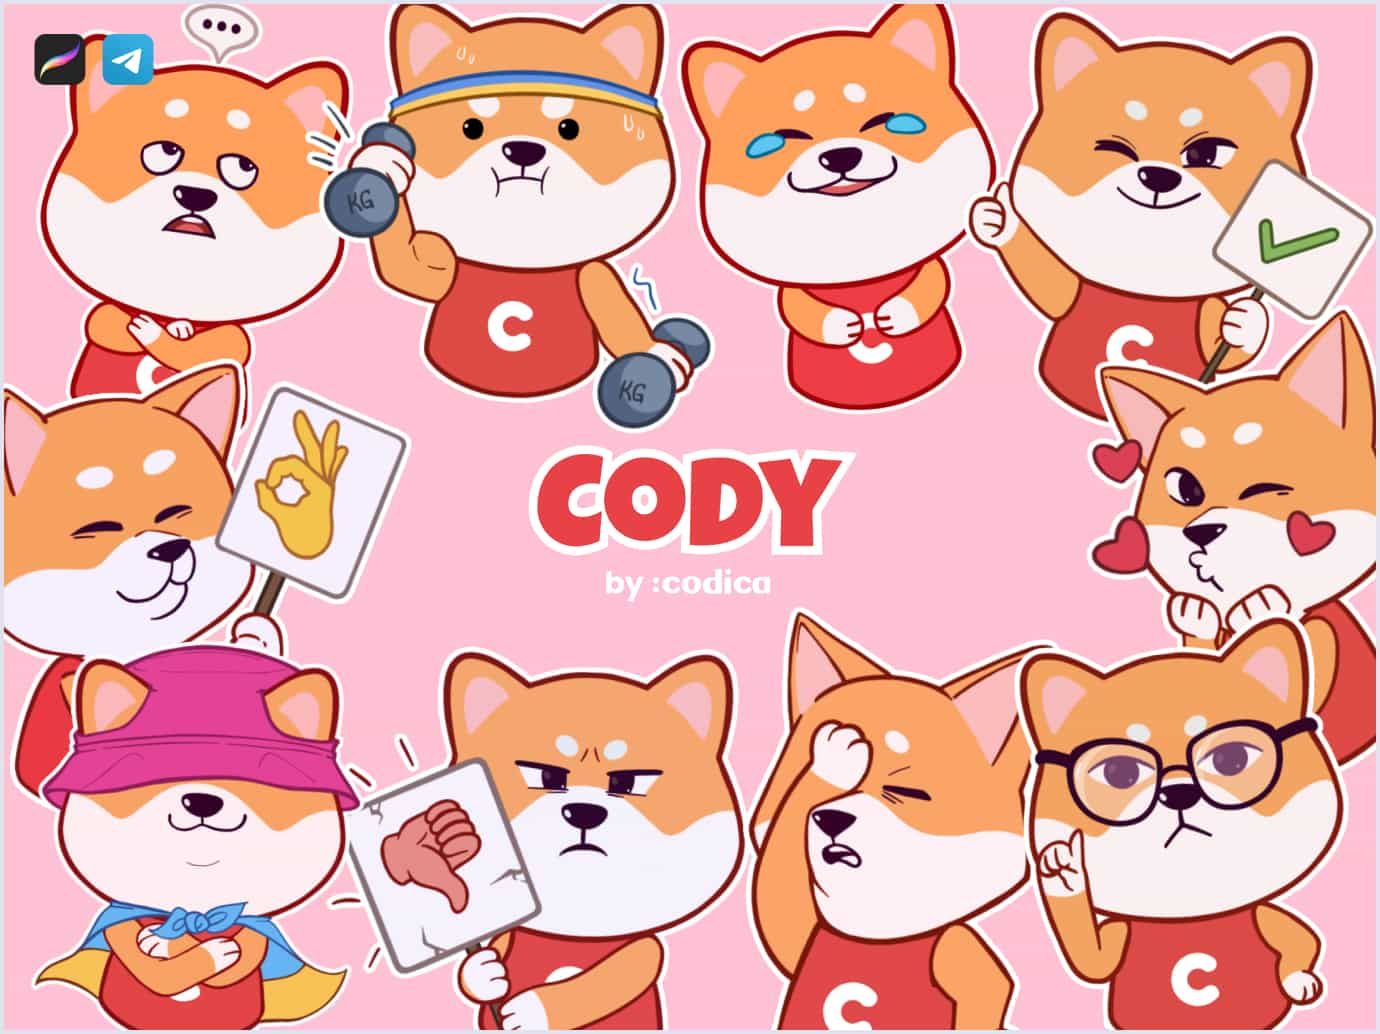 Mr. Cody runs Codica's Telegram channel